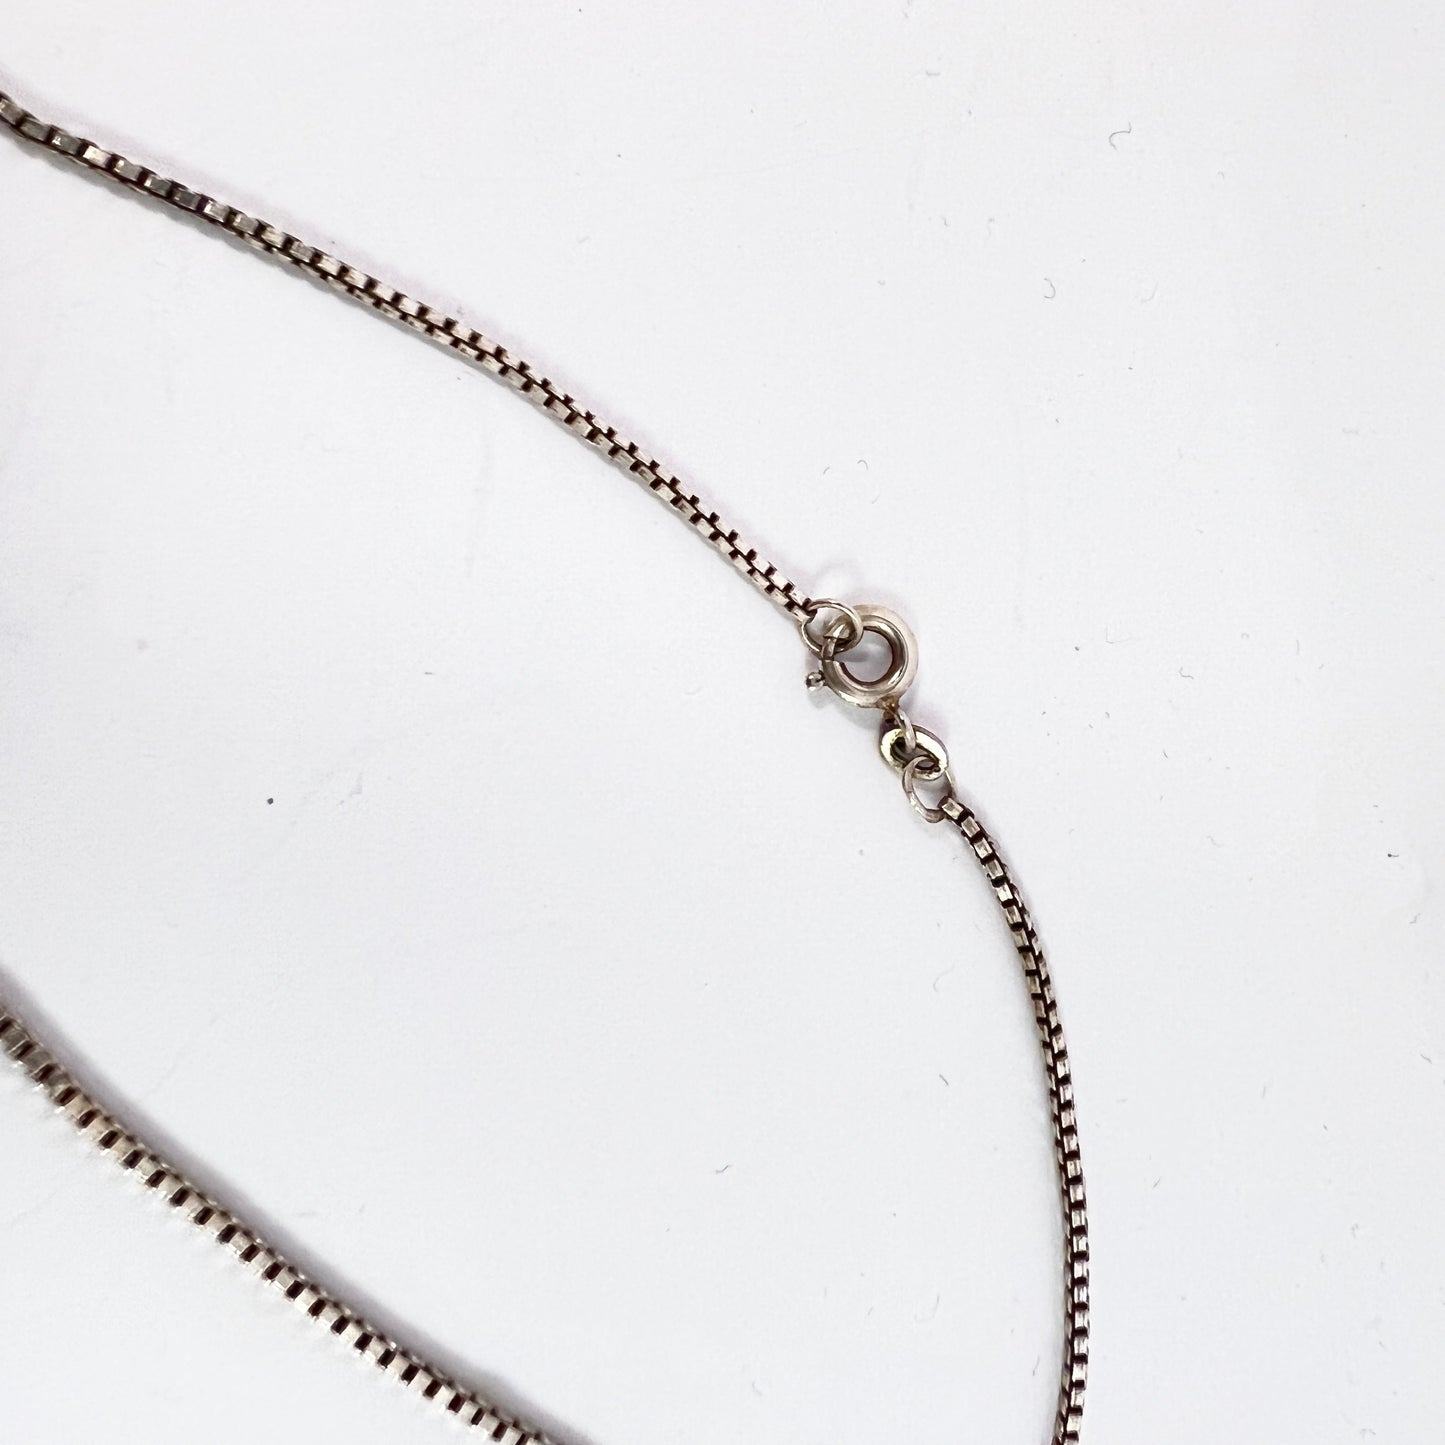 Vintage 835 Silver Quartz Pendant Long Chain Necklace.